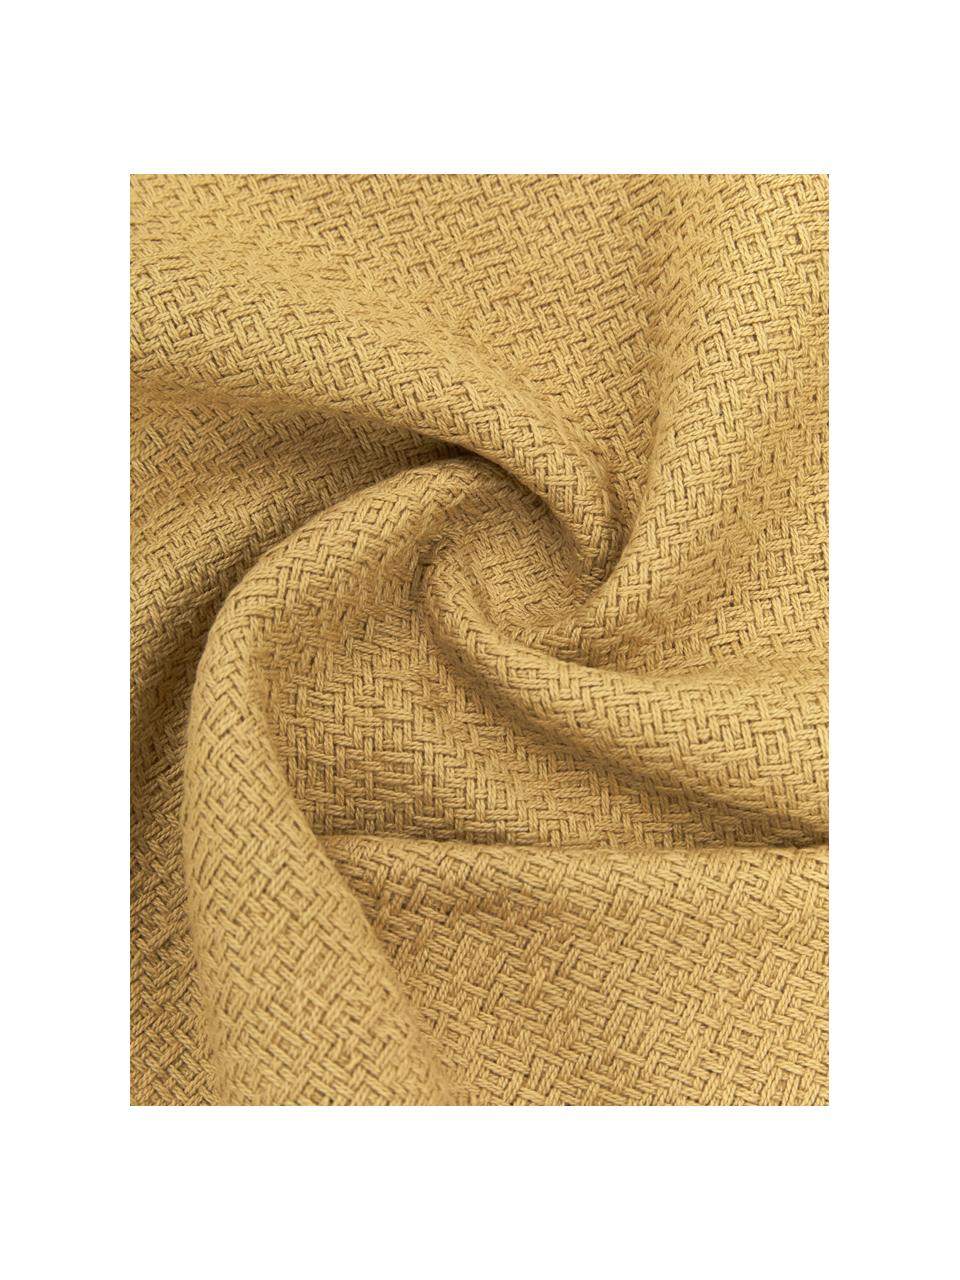 Oboustranný povlak na polštář s třásněmi Loran, 100 % bavlna, Hořčičná žlutá, krémově bílá, Š 40 cm, D 40 cm